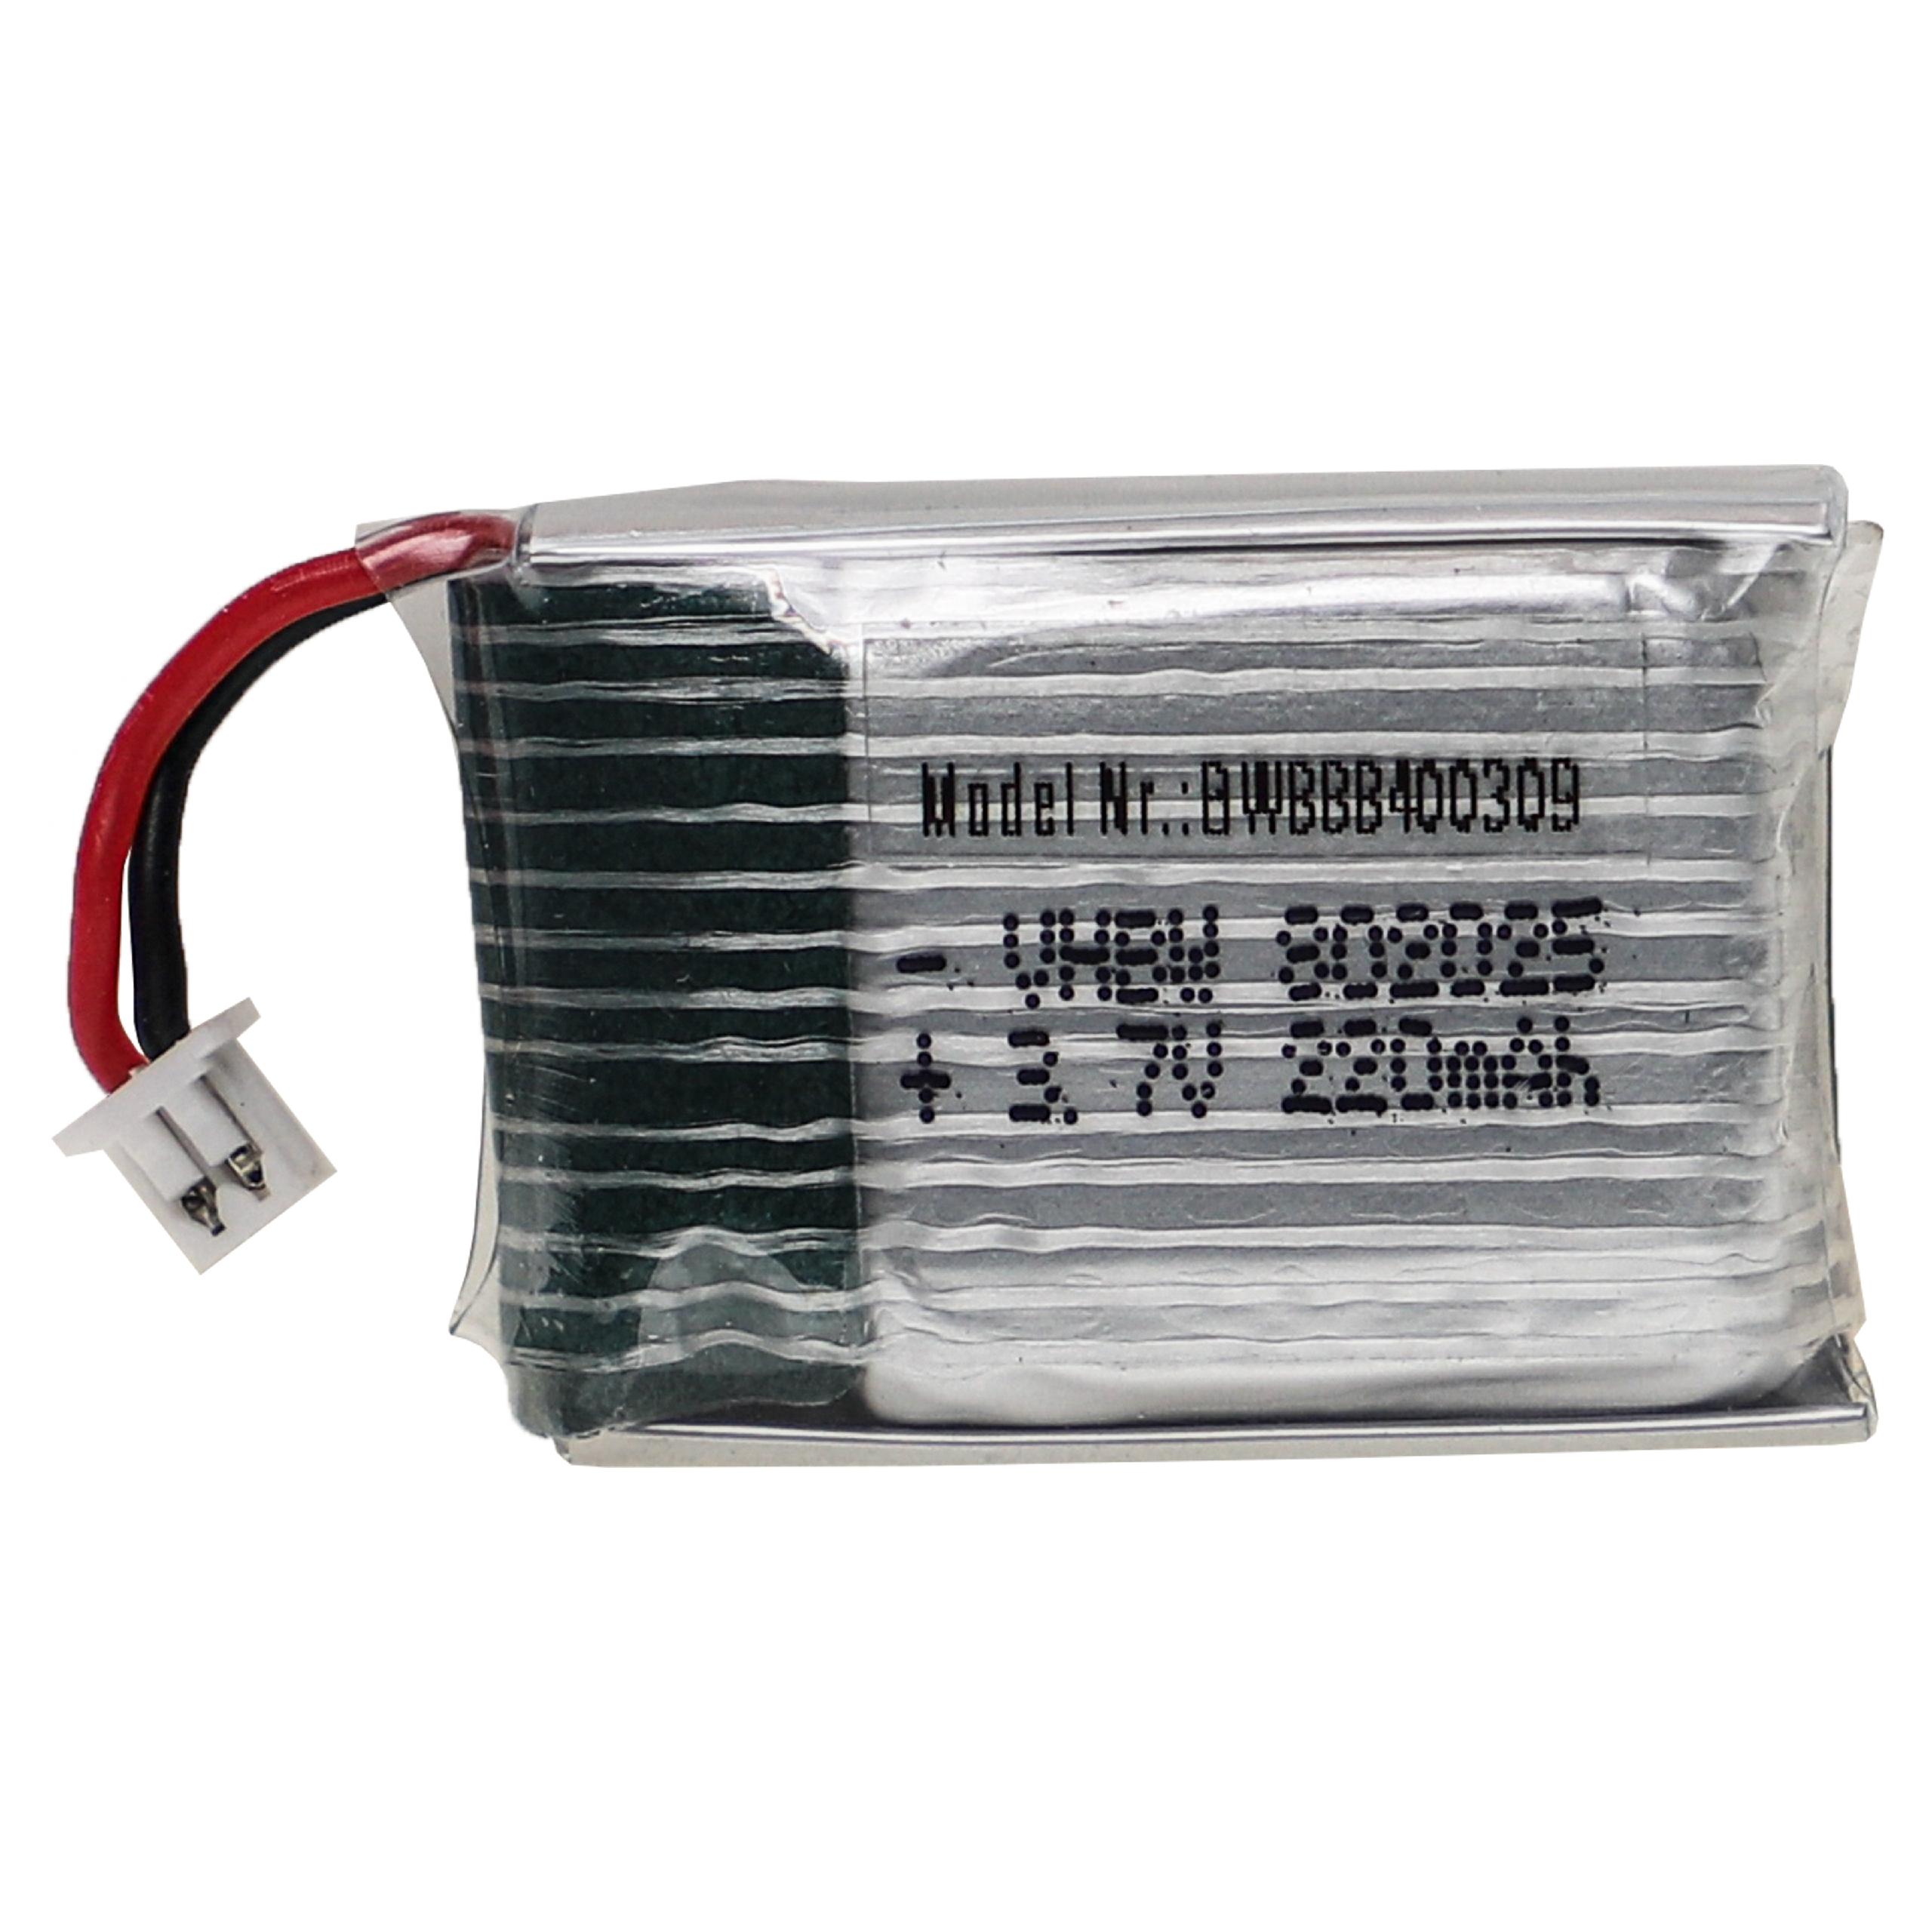 Akumulator do modeli zdalnie sterowanych RC - 220 mAh 3,7 V LiPo, PH 1.25 2P